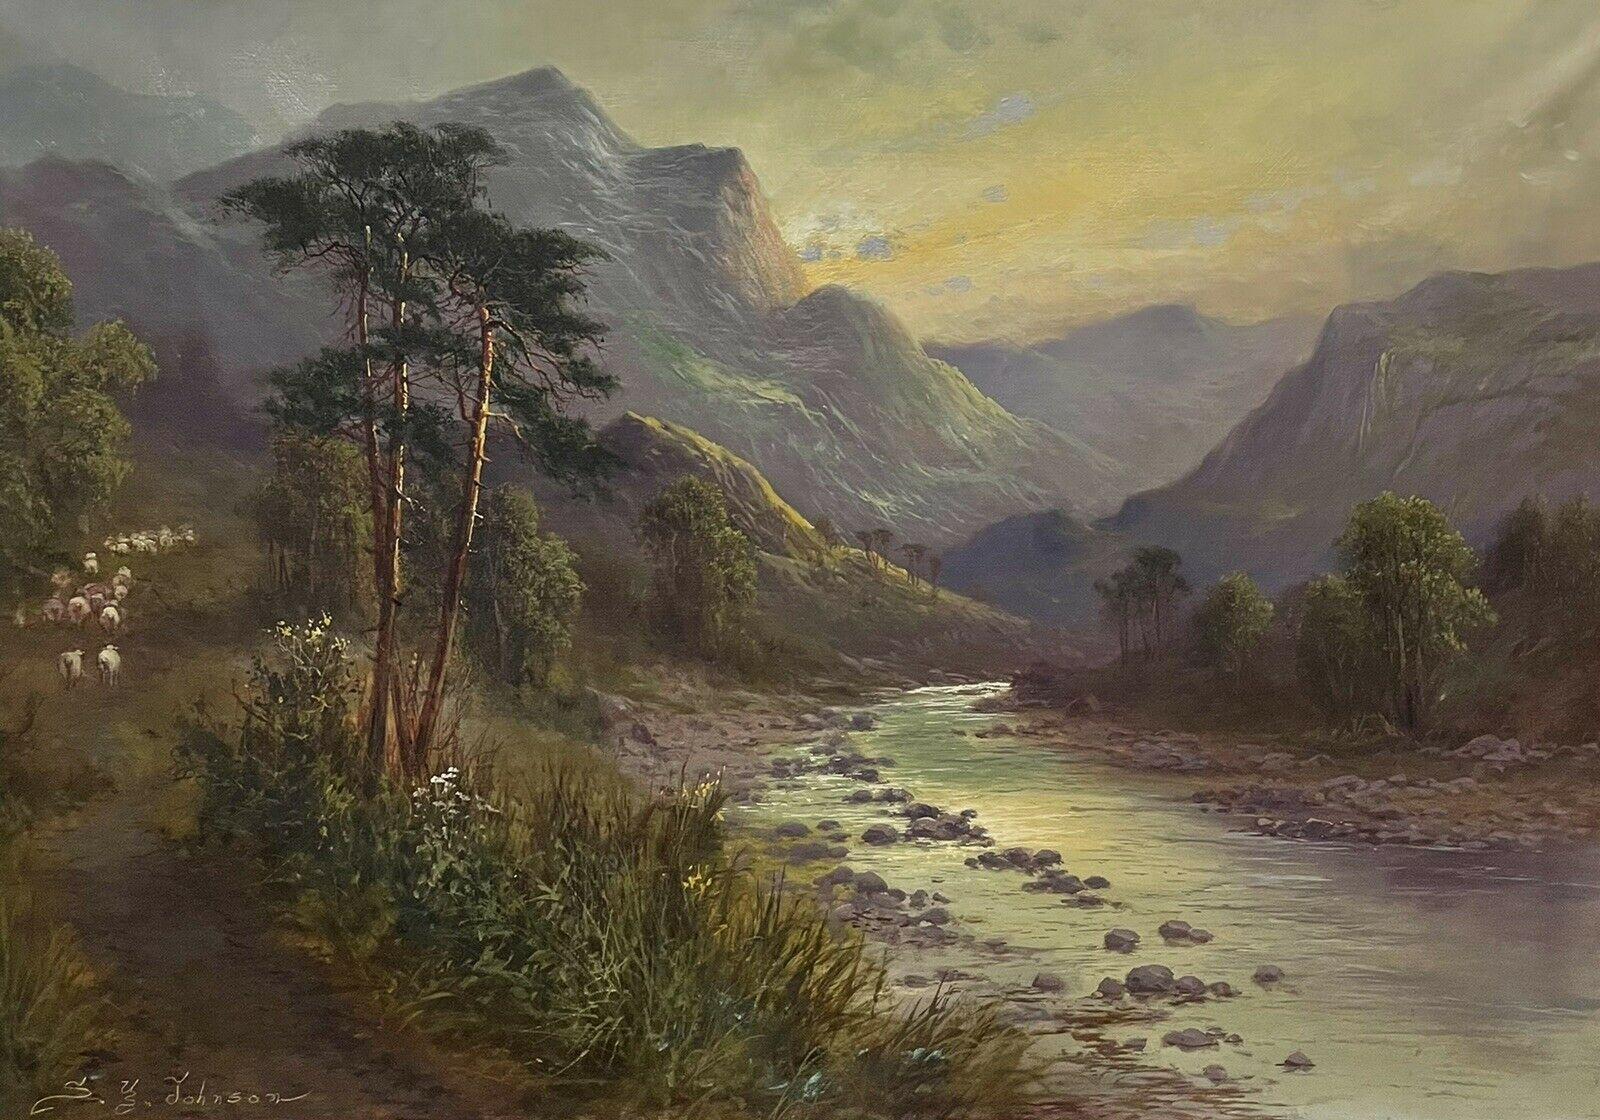 Landscape Painting Sidney Yates Johnson - Grande peinture à l'huile ancienne de paysage écossais des Highlands, représentant des moutons dans une vallée de la rivière